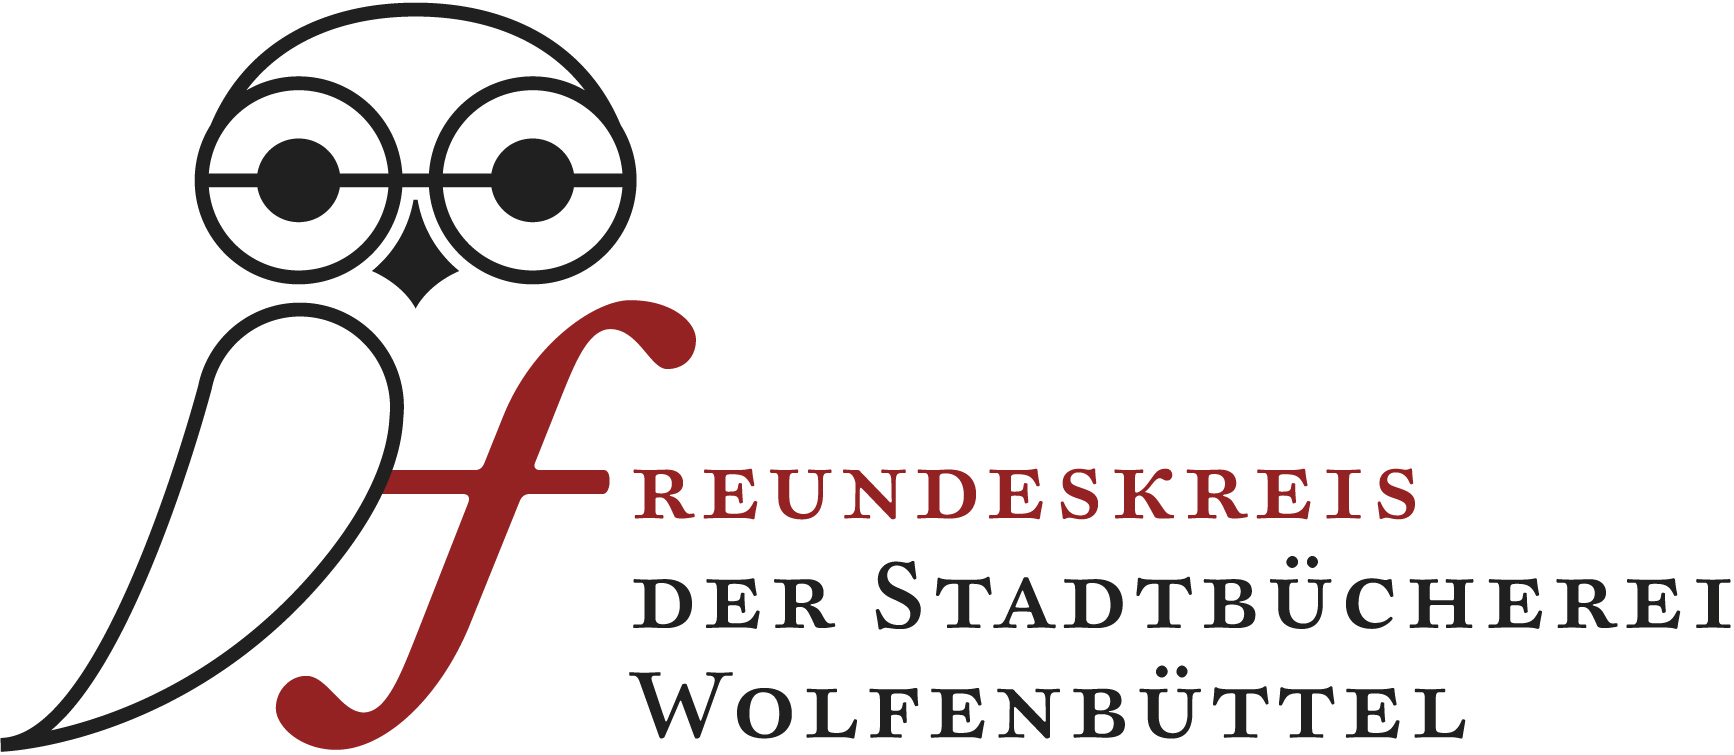 Logo des Freundeskreises der Stadtbücherei, eine Eule mit dem Schriftzug Freundeskreis der Stadtbücherei Wolfenbüttel